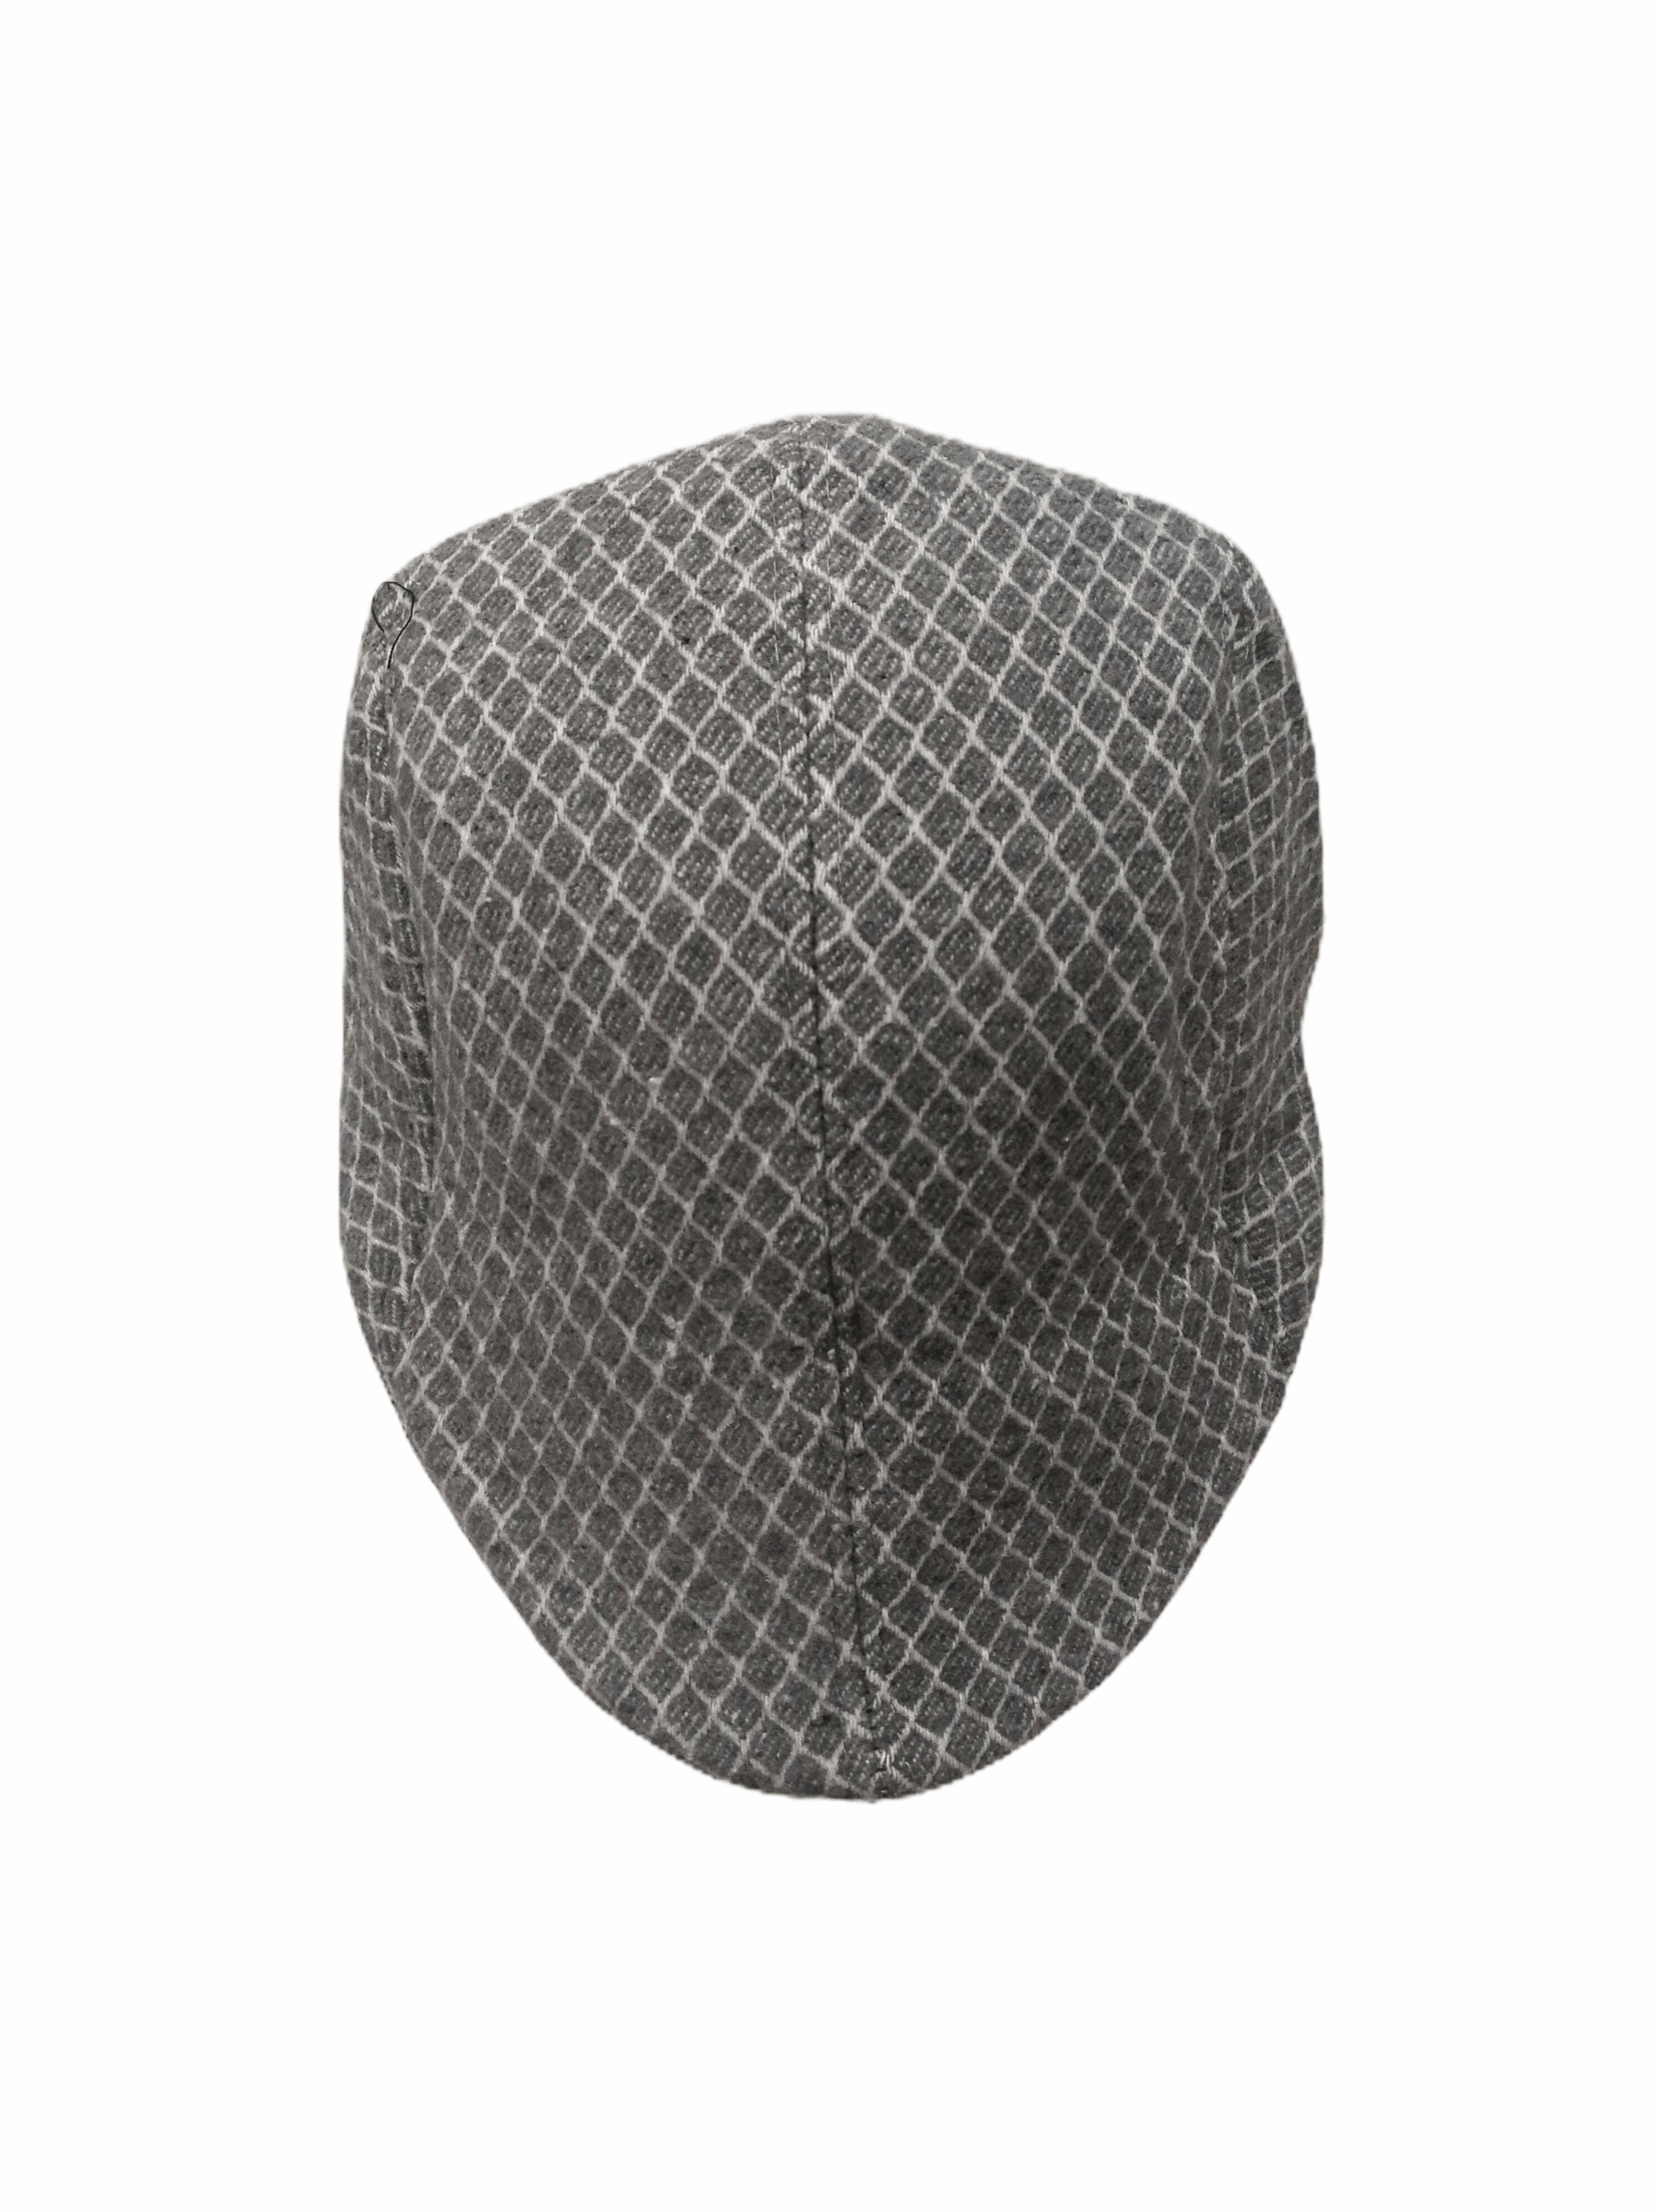 Béret homme motif carrés (x12) 2,50€/unité | Grossiste-pro